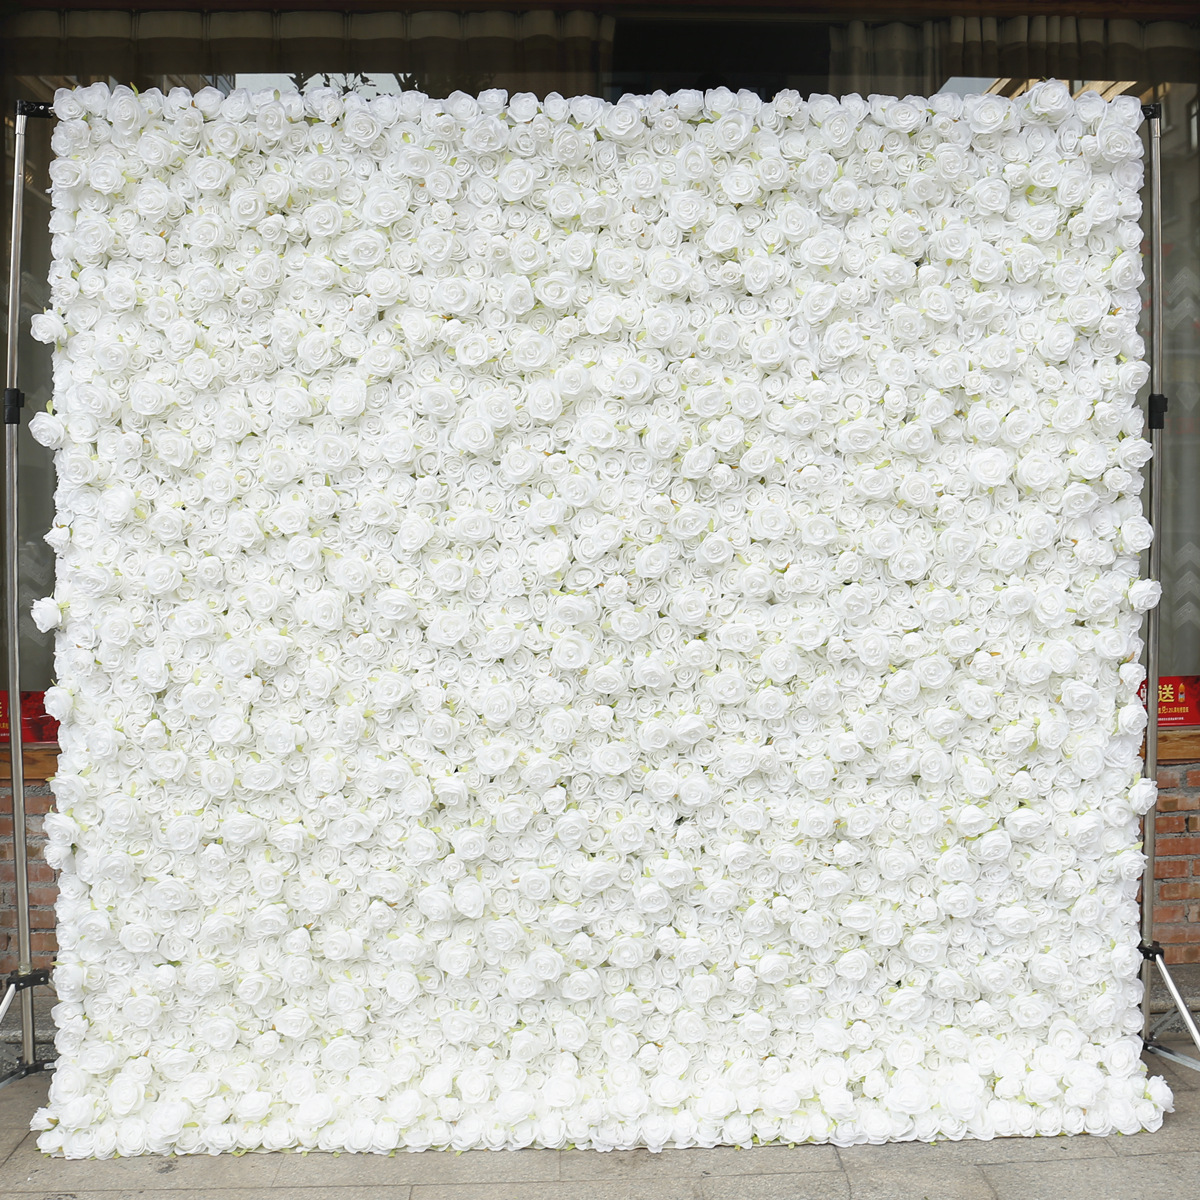 Pânză albă pur fund trandafir perete fundal perete de înaltă densitate 5D decorare nuntă decorare nuntă